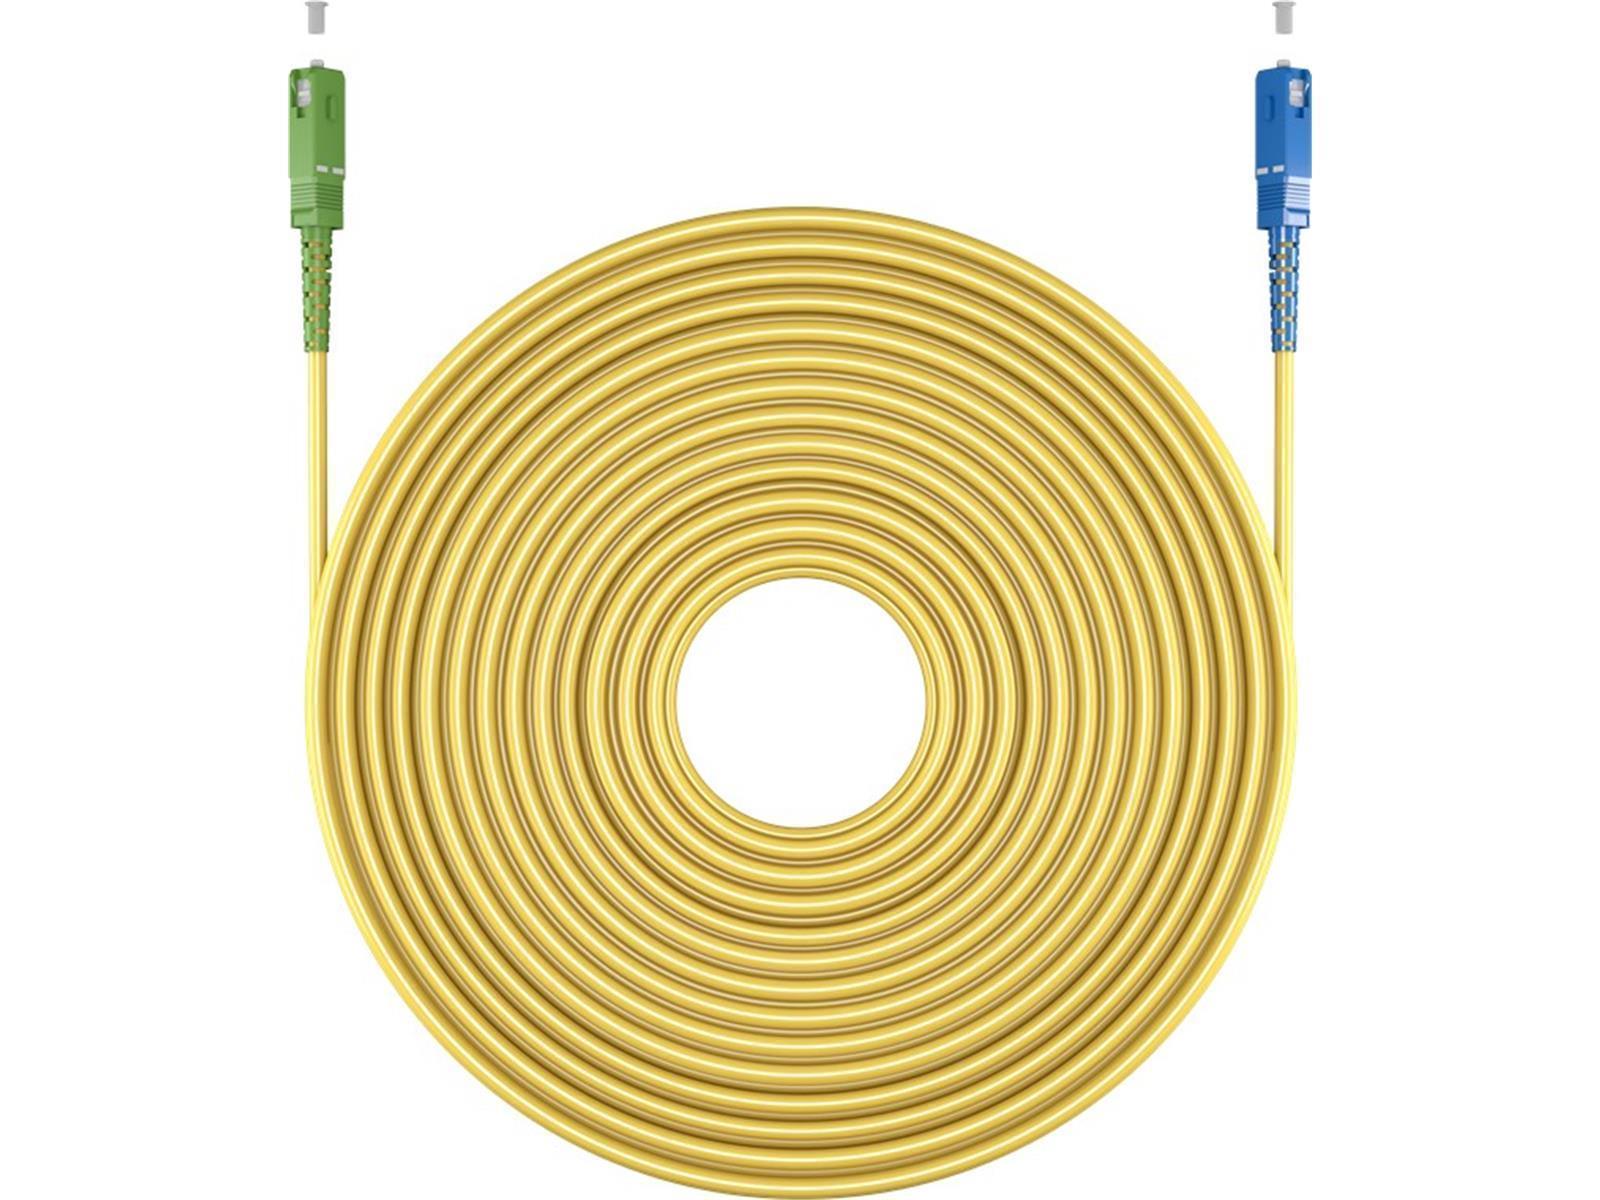 Glasfaserkabel (FTTH), Singlemode (OS2) Yellow, (Simplex), 25 m